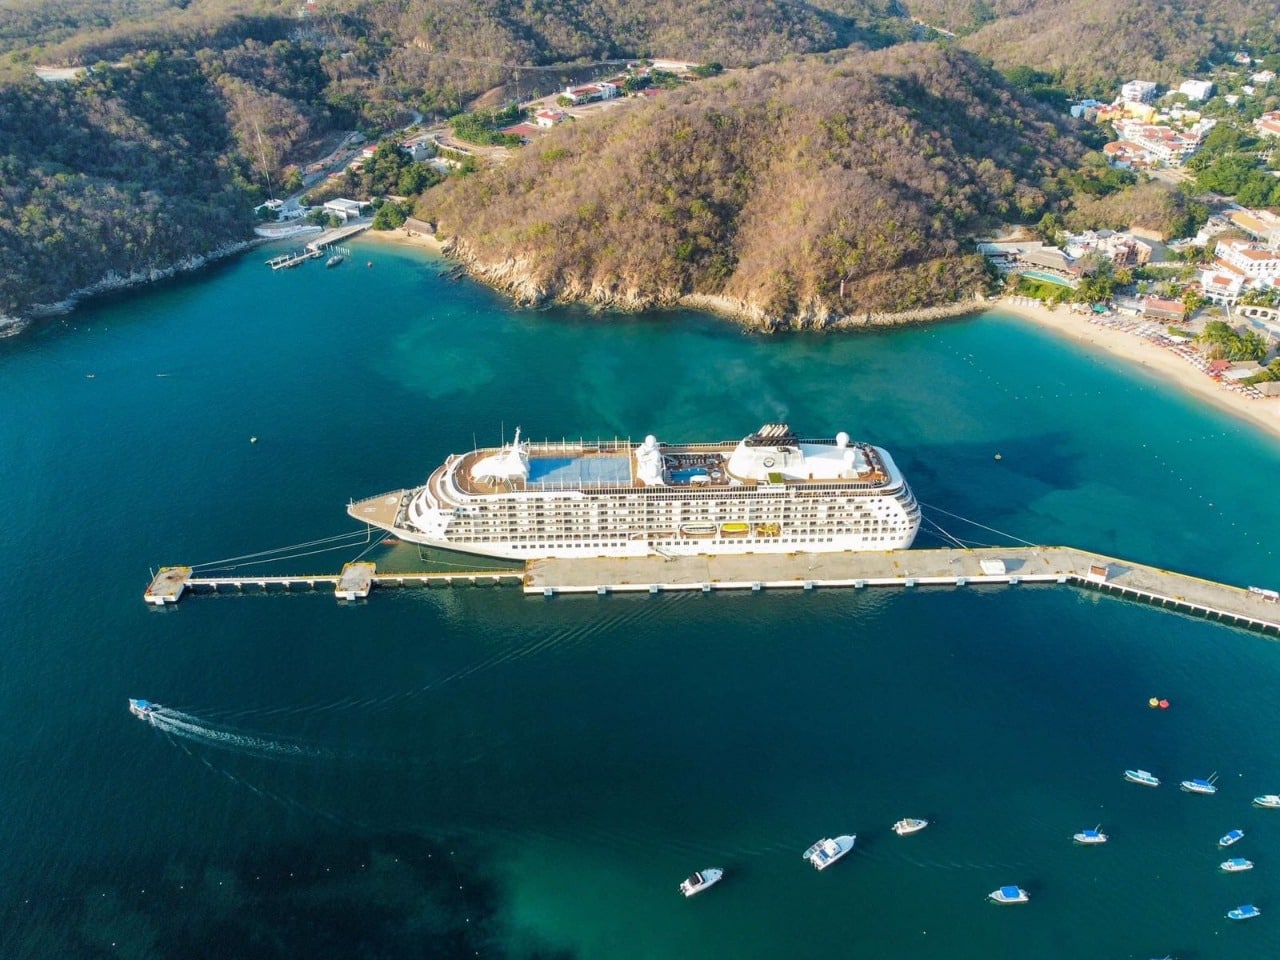 Turismo de cruceros se reactiva en Bahías de Huatulco